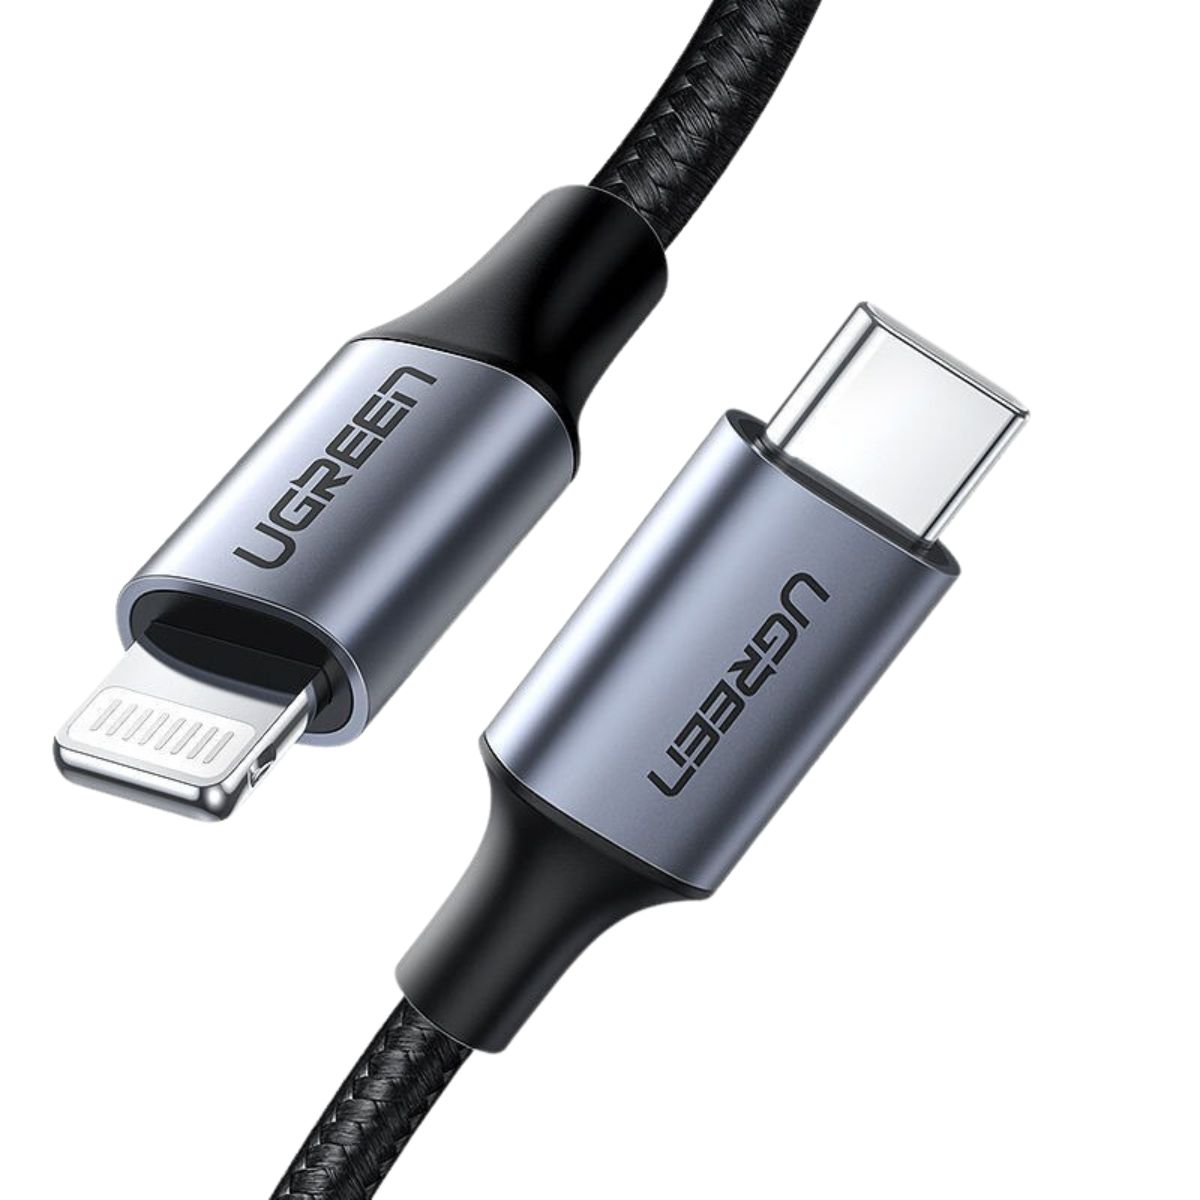 Cáp sạc dài 1m USB-C to Lightning Ugreen 60759 US304 màu đen, hỗ trợ sạc nhanh 3A, vỏ nhôm